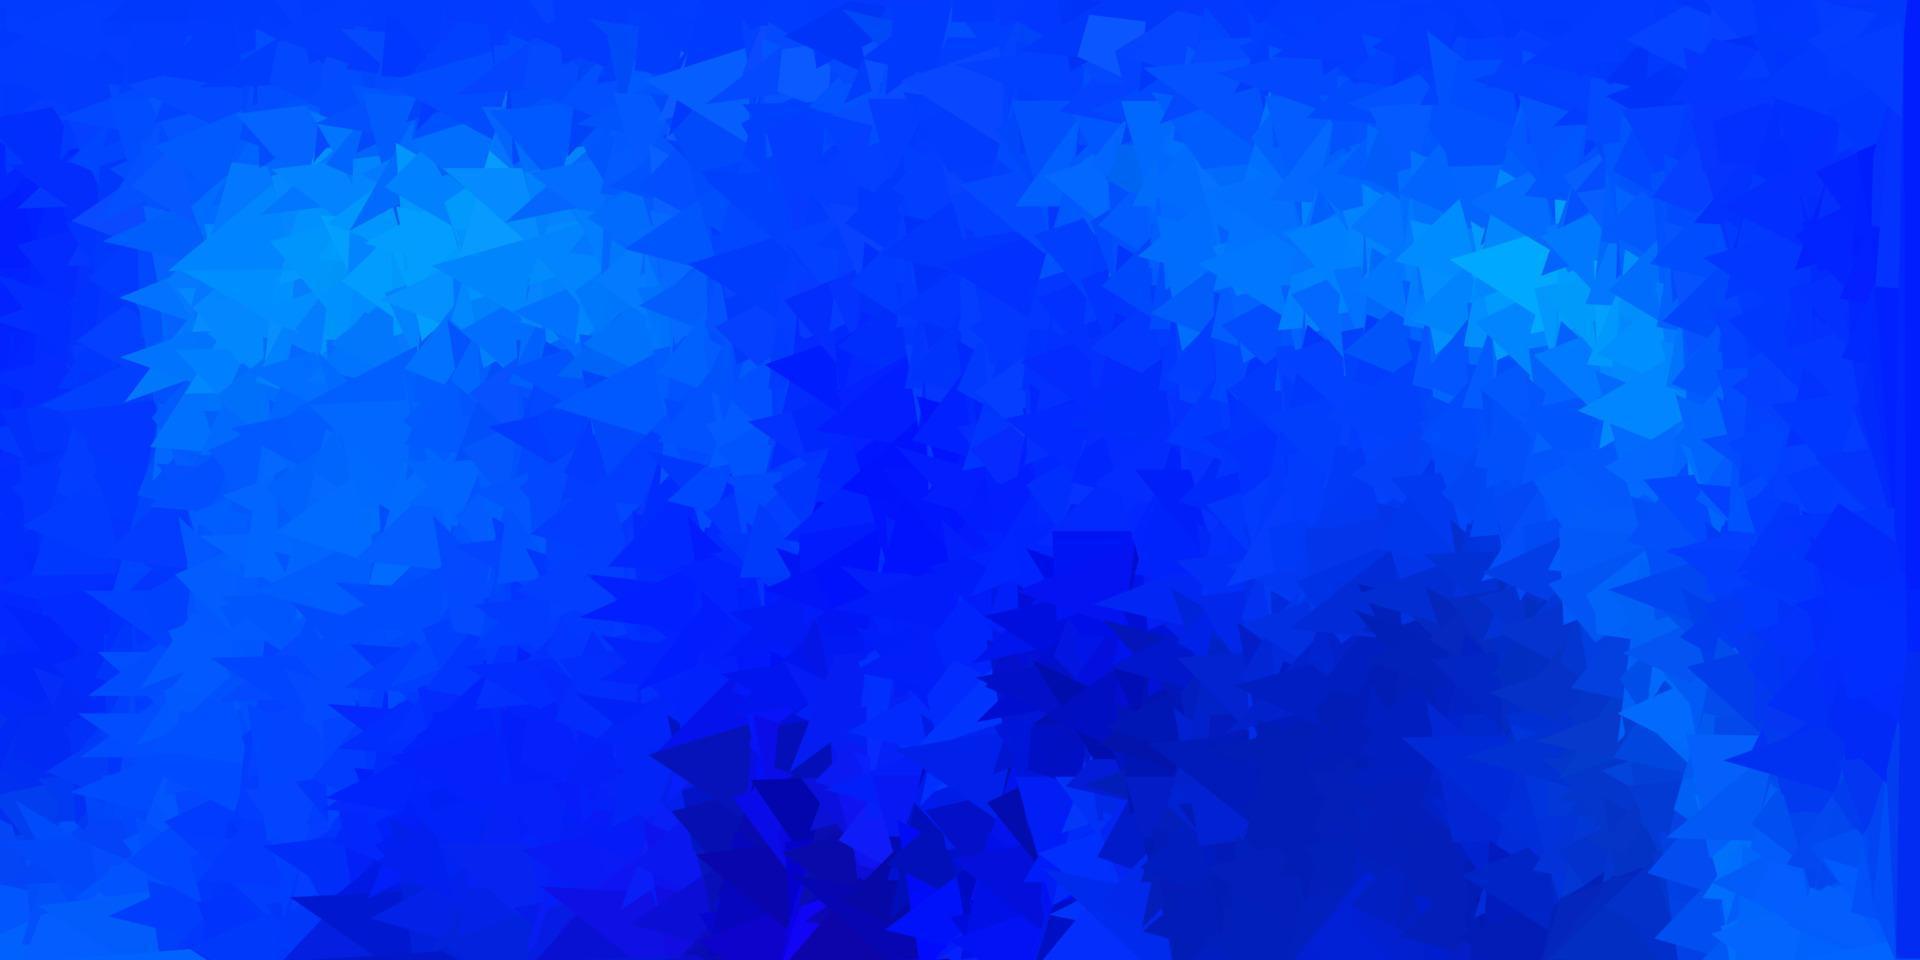 mörkrosa, blå vektor abstrakt triangel bakgrund.